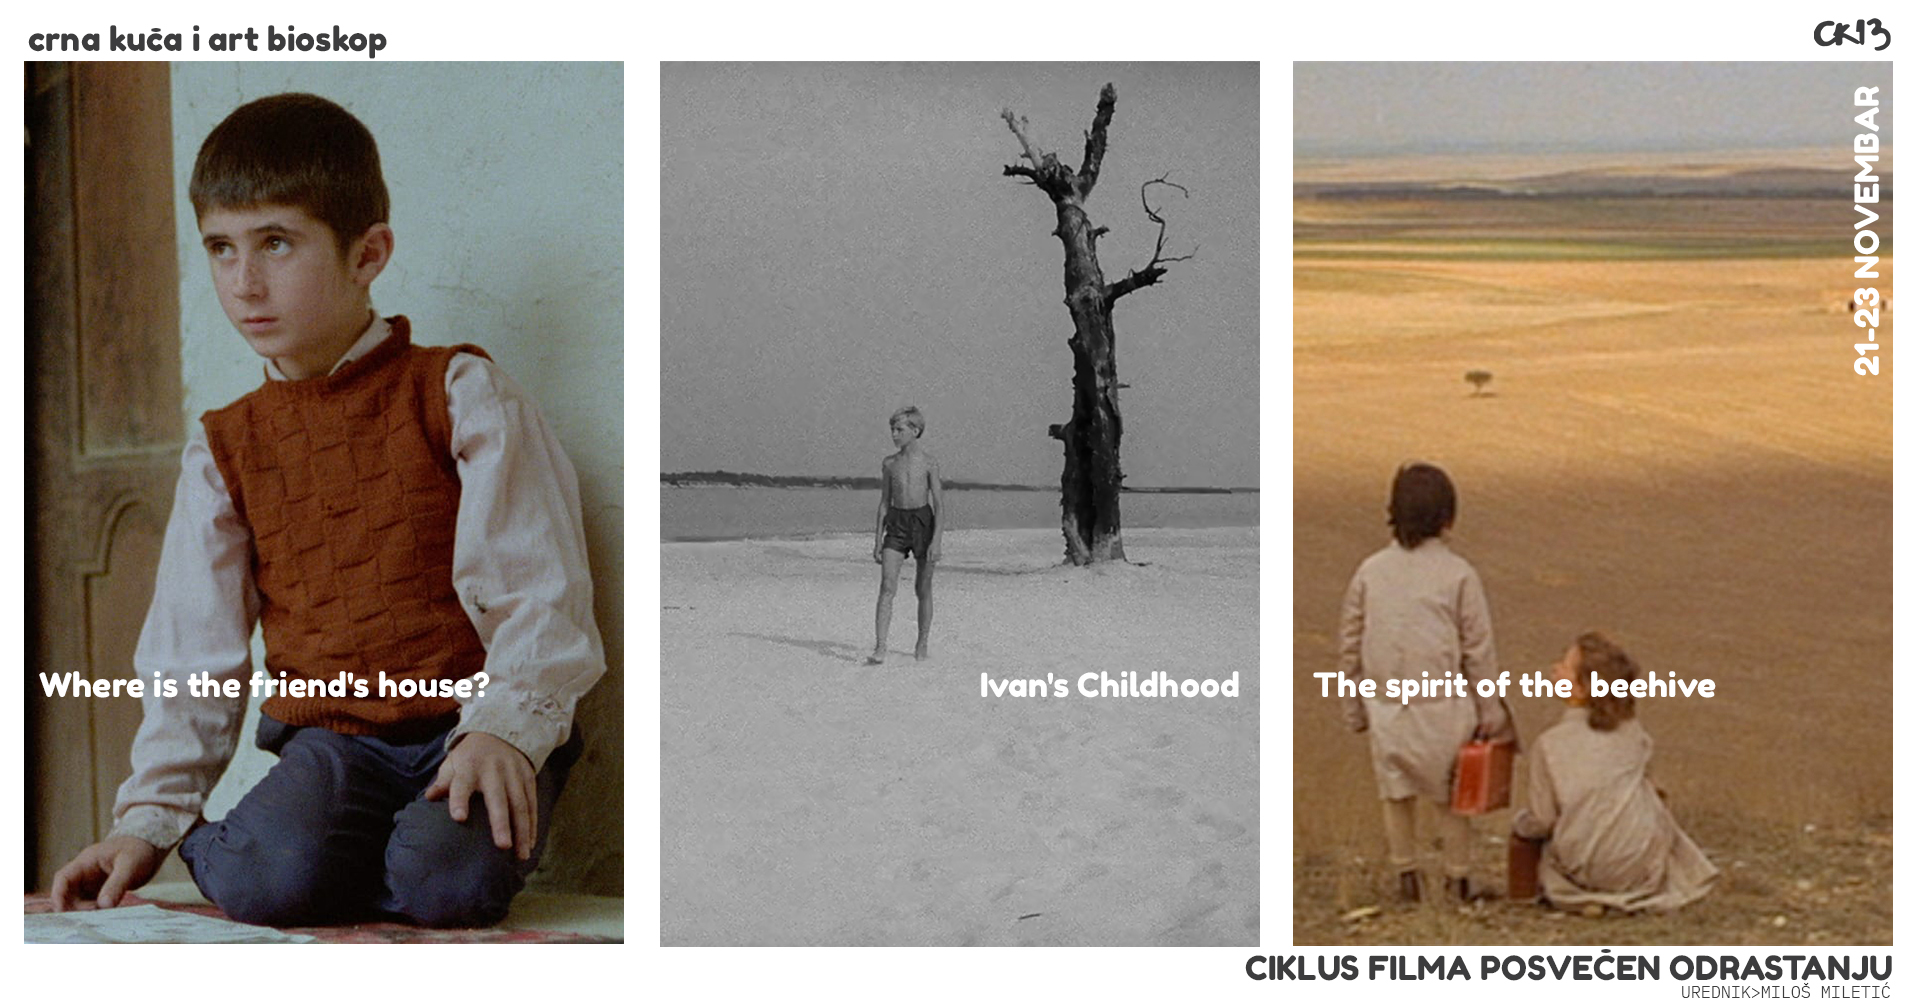 Ciklus filmova o odrastanju